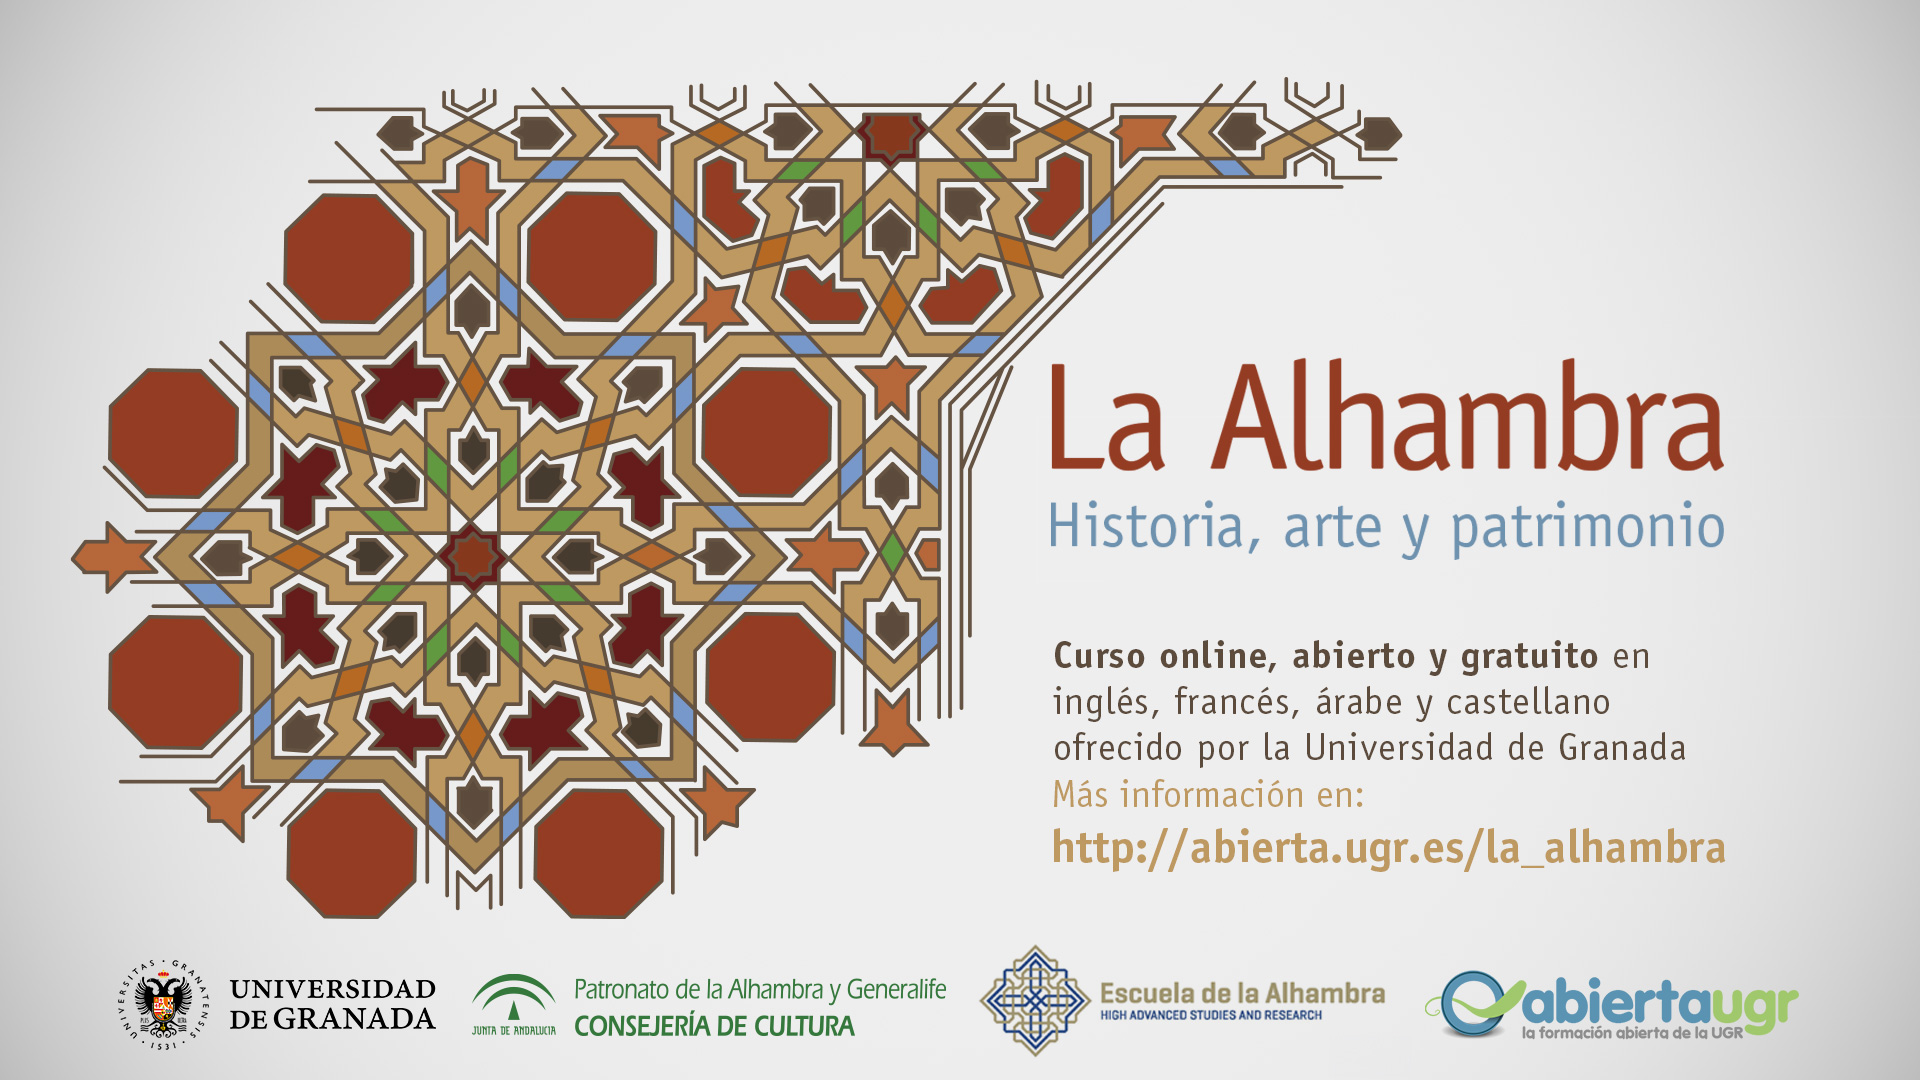 La Universidad de Granada ofrece diversos módulos para conocer la historia, estructura y estética de la Alhambra